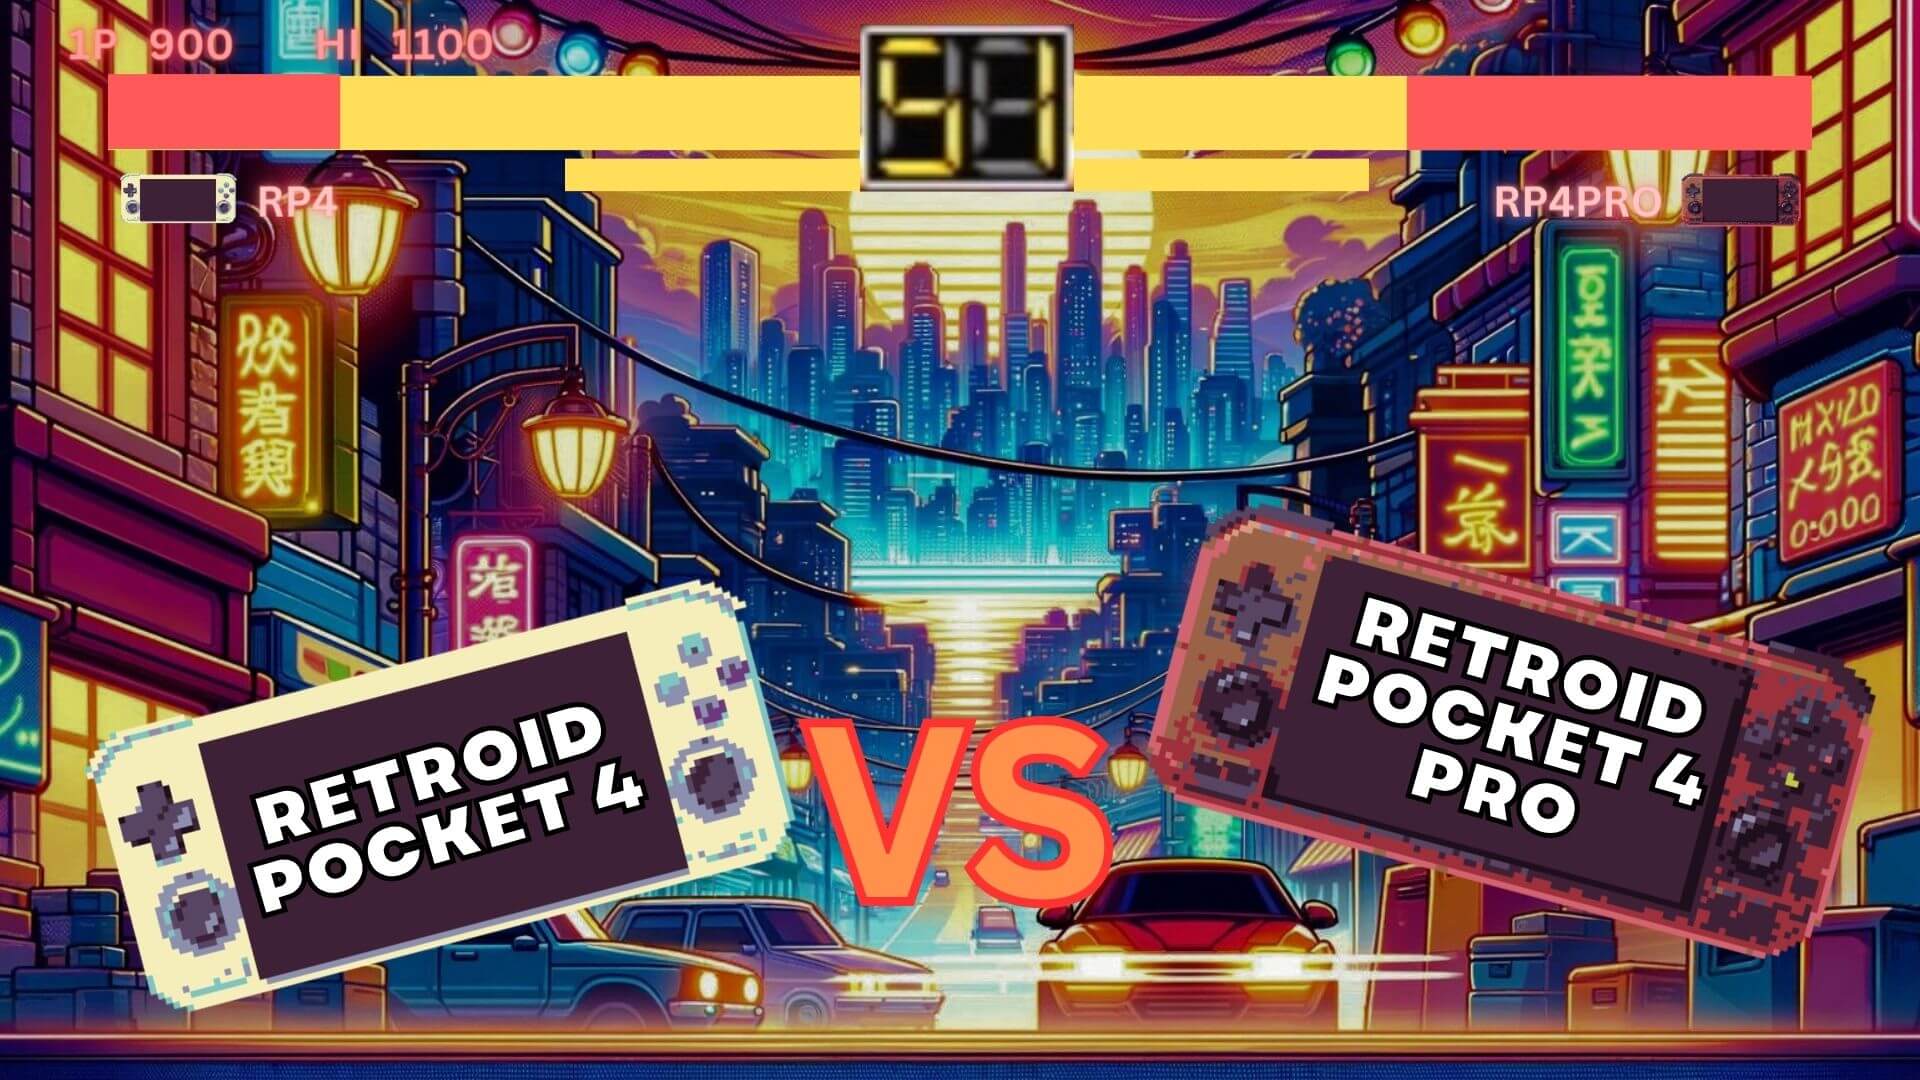 Retroid Pocket 4 vs Retroid Pocket  4 PRO met video - Welke heeft de beste prijs versus prestaties?